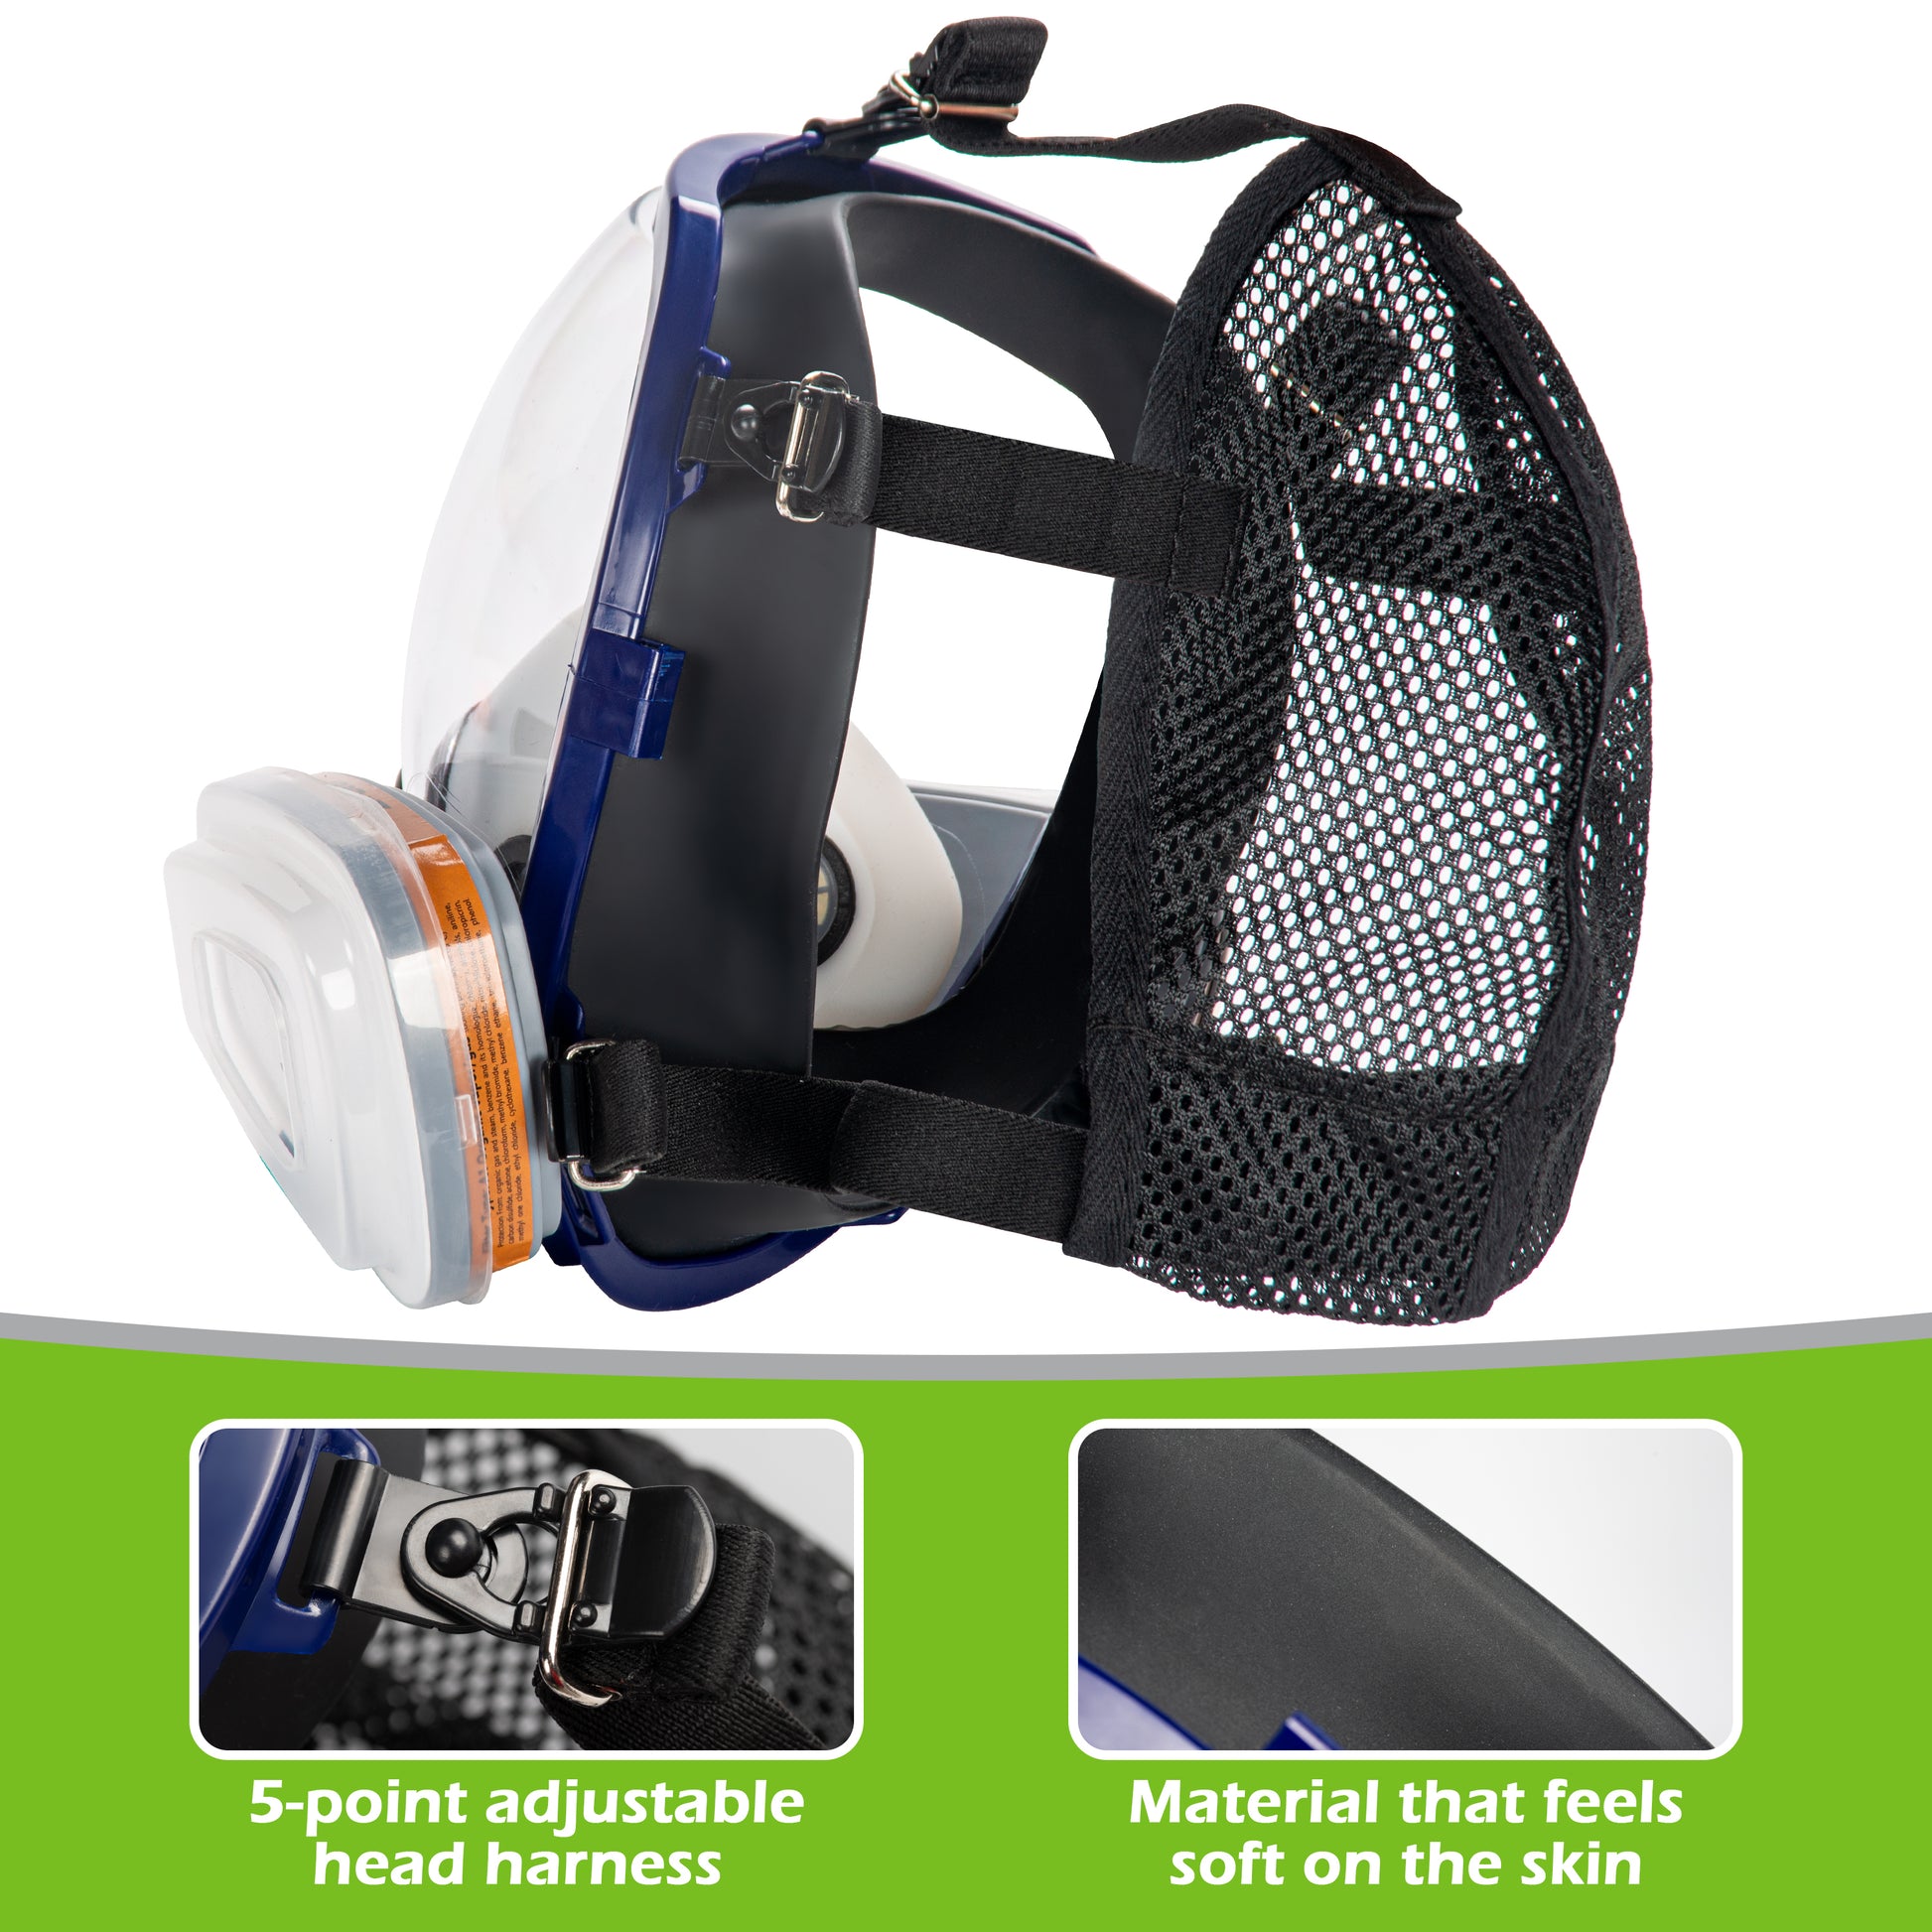 AirGearPro G-750 Masque de Protection Respiratoire Intégral avec